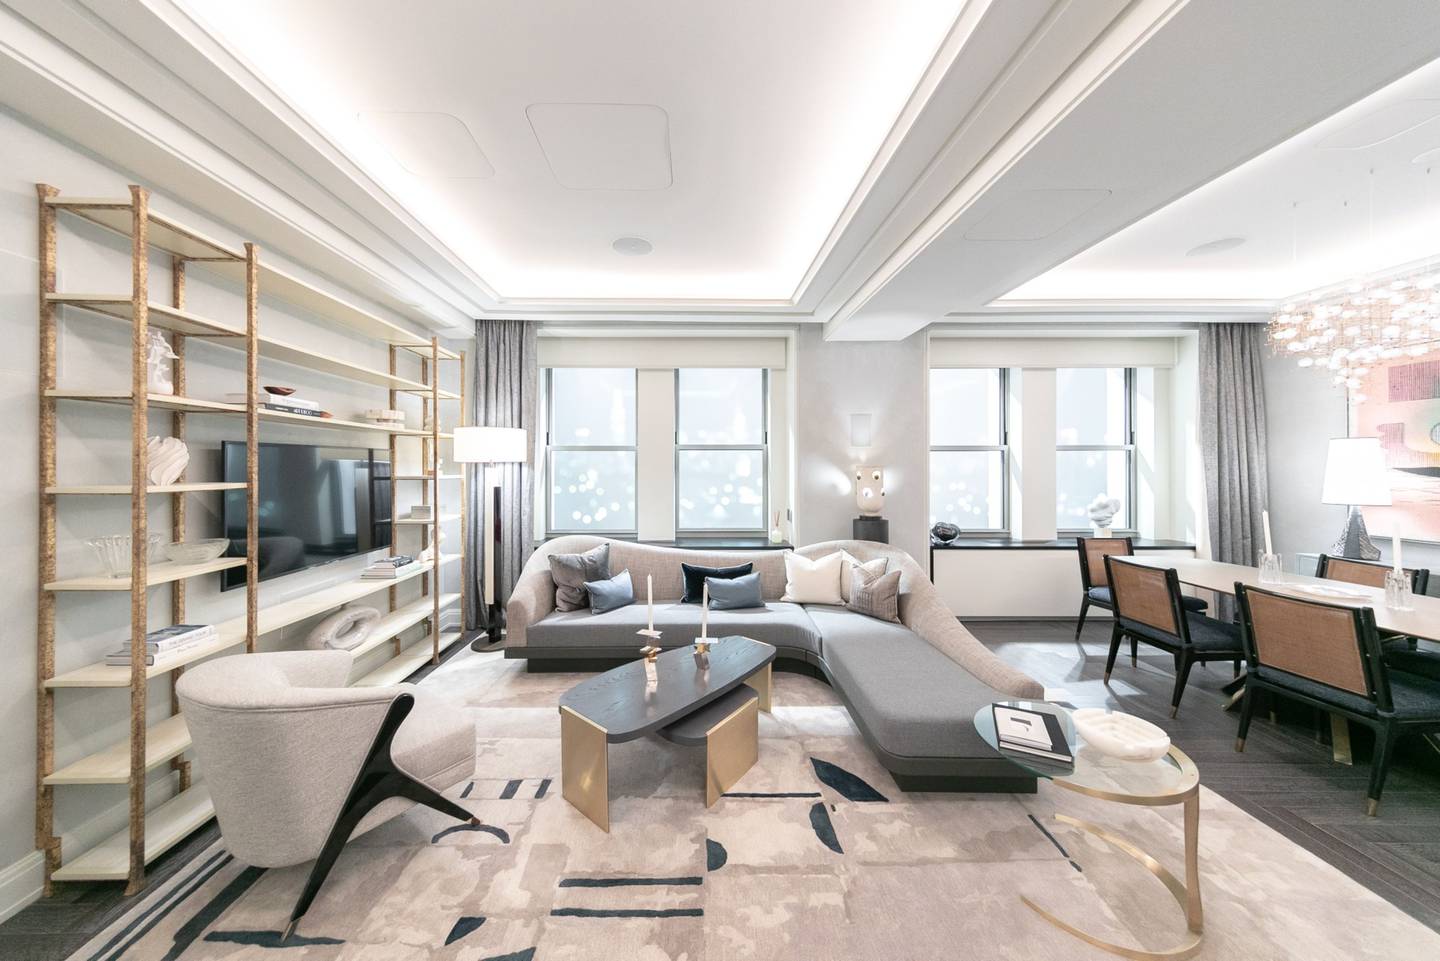 El salón y el comedor de un apartamento modelo en la oficina de ventas de las Torres del Waldorf Astoria. Fotógrafo: Jeenah Moon/Bloomberg
dfd